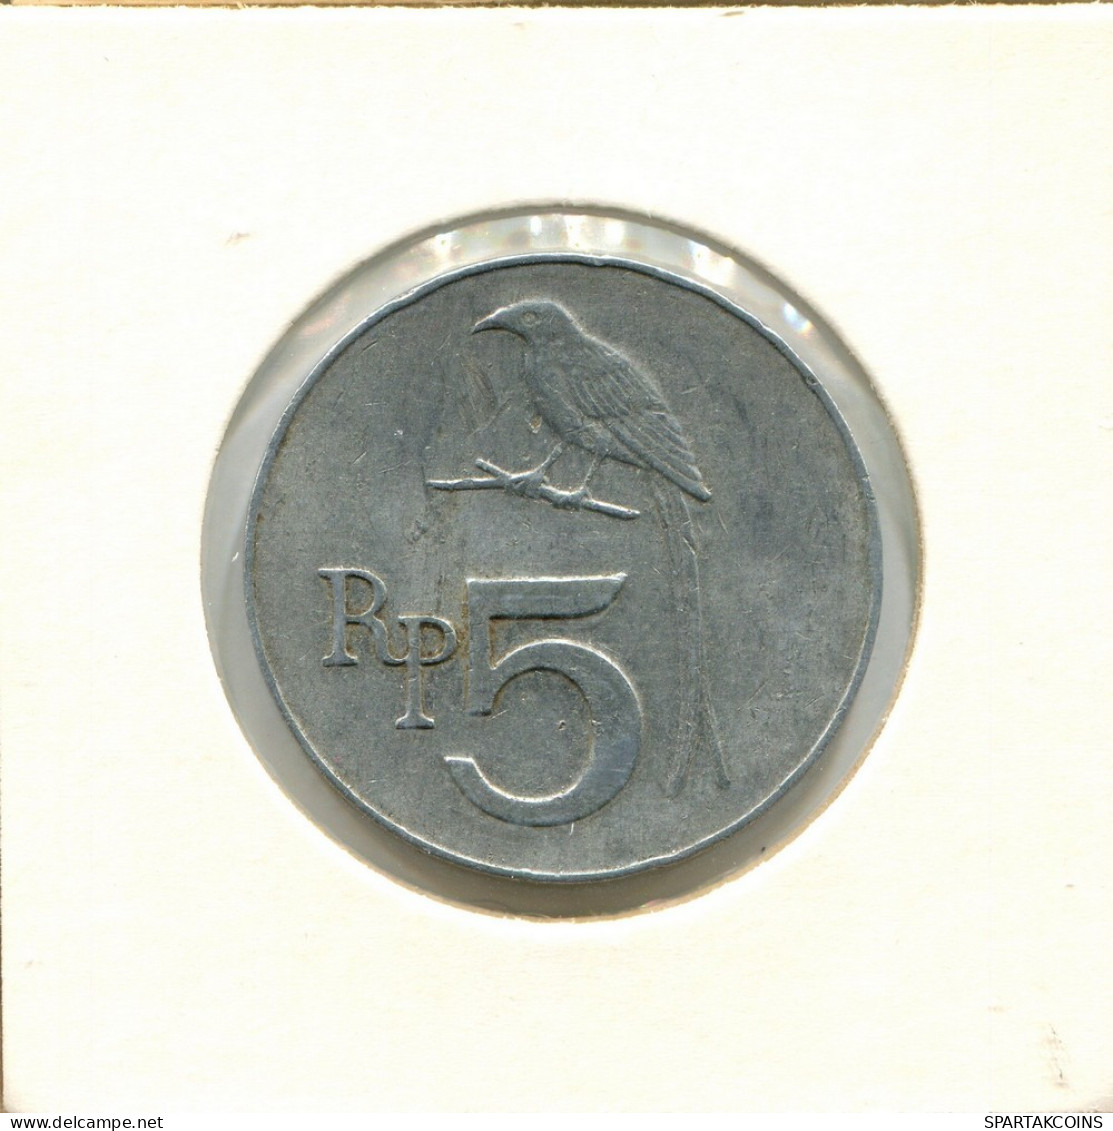 5 RUPIAH 1970 INDONESISCH INDONESIA Münze #AY862.D.A - Indonesien